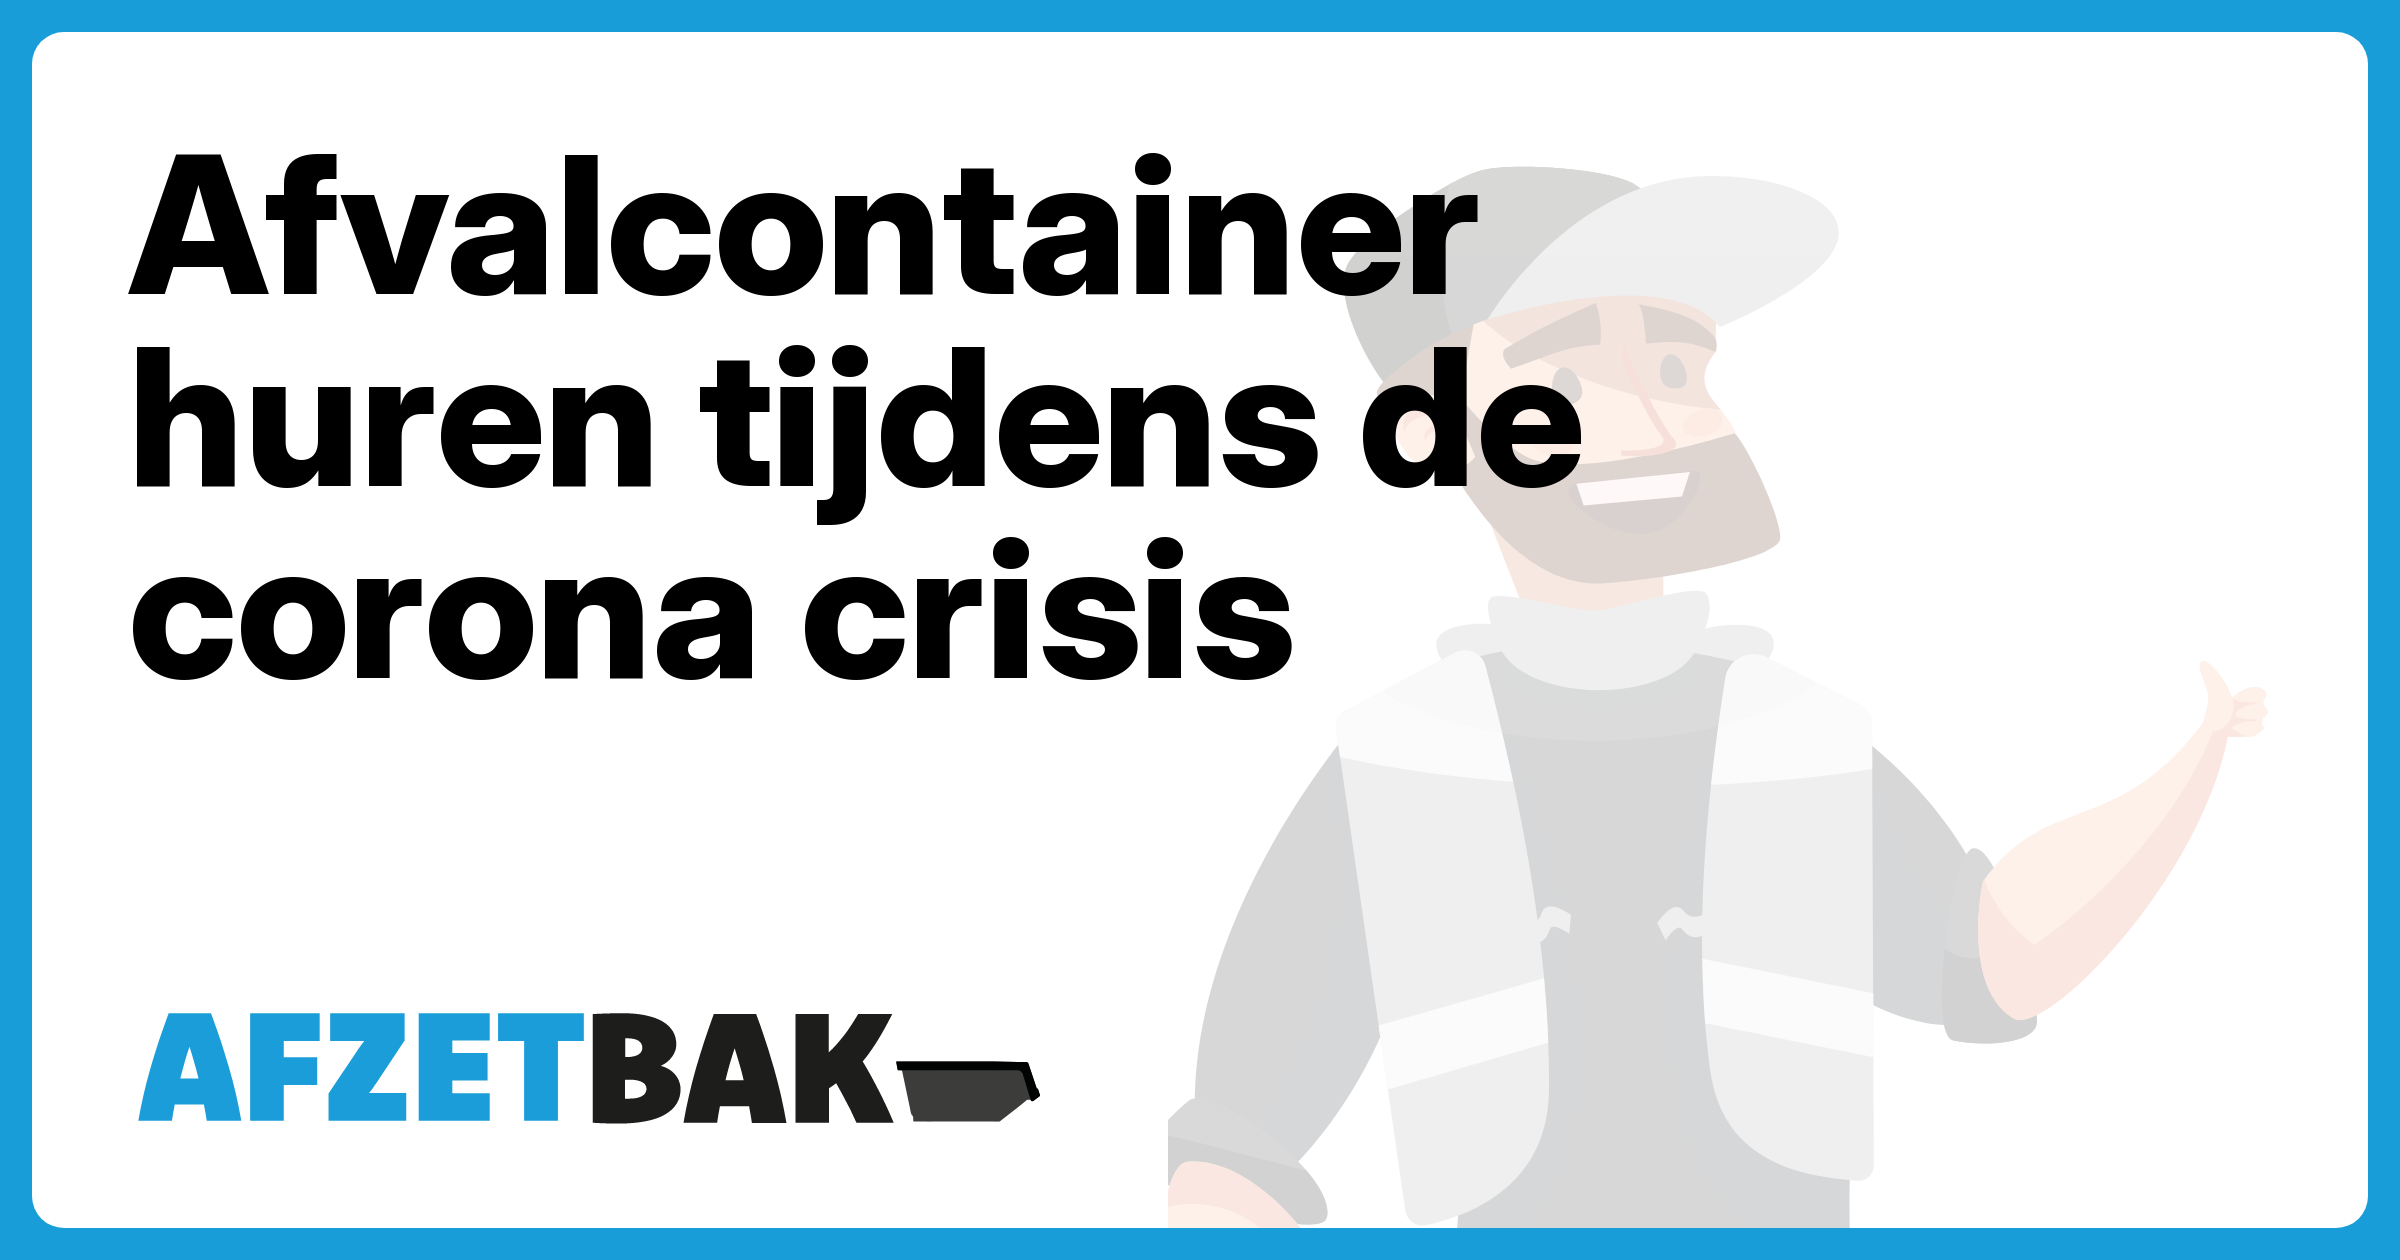 Afvalcontainer huren tijdens de corona crisis - Afzetbak.nl